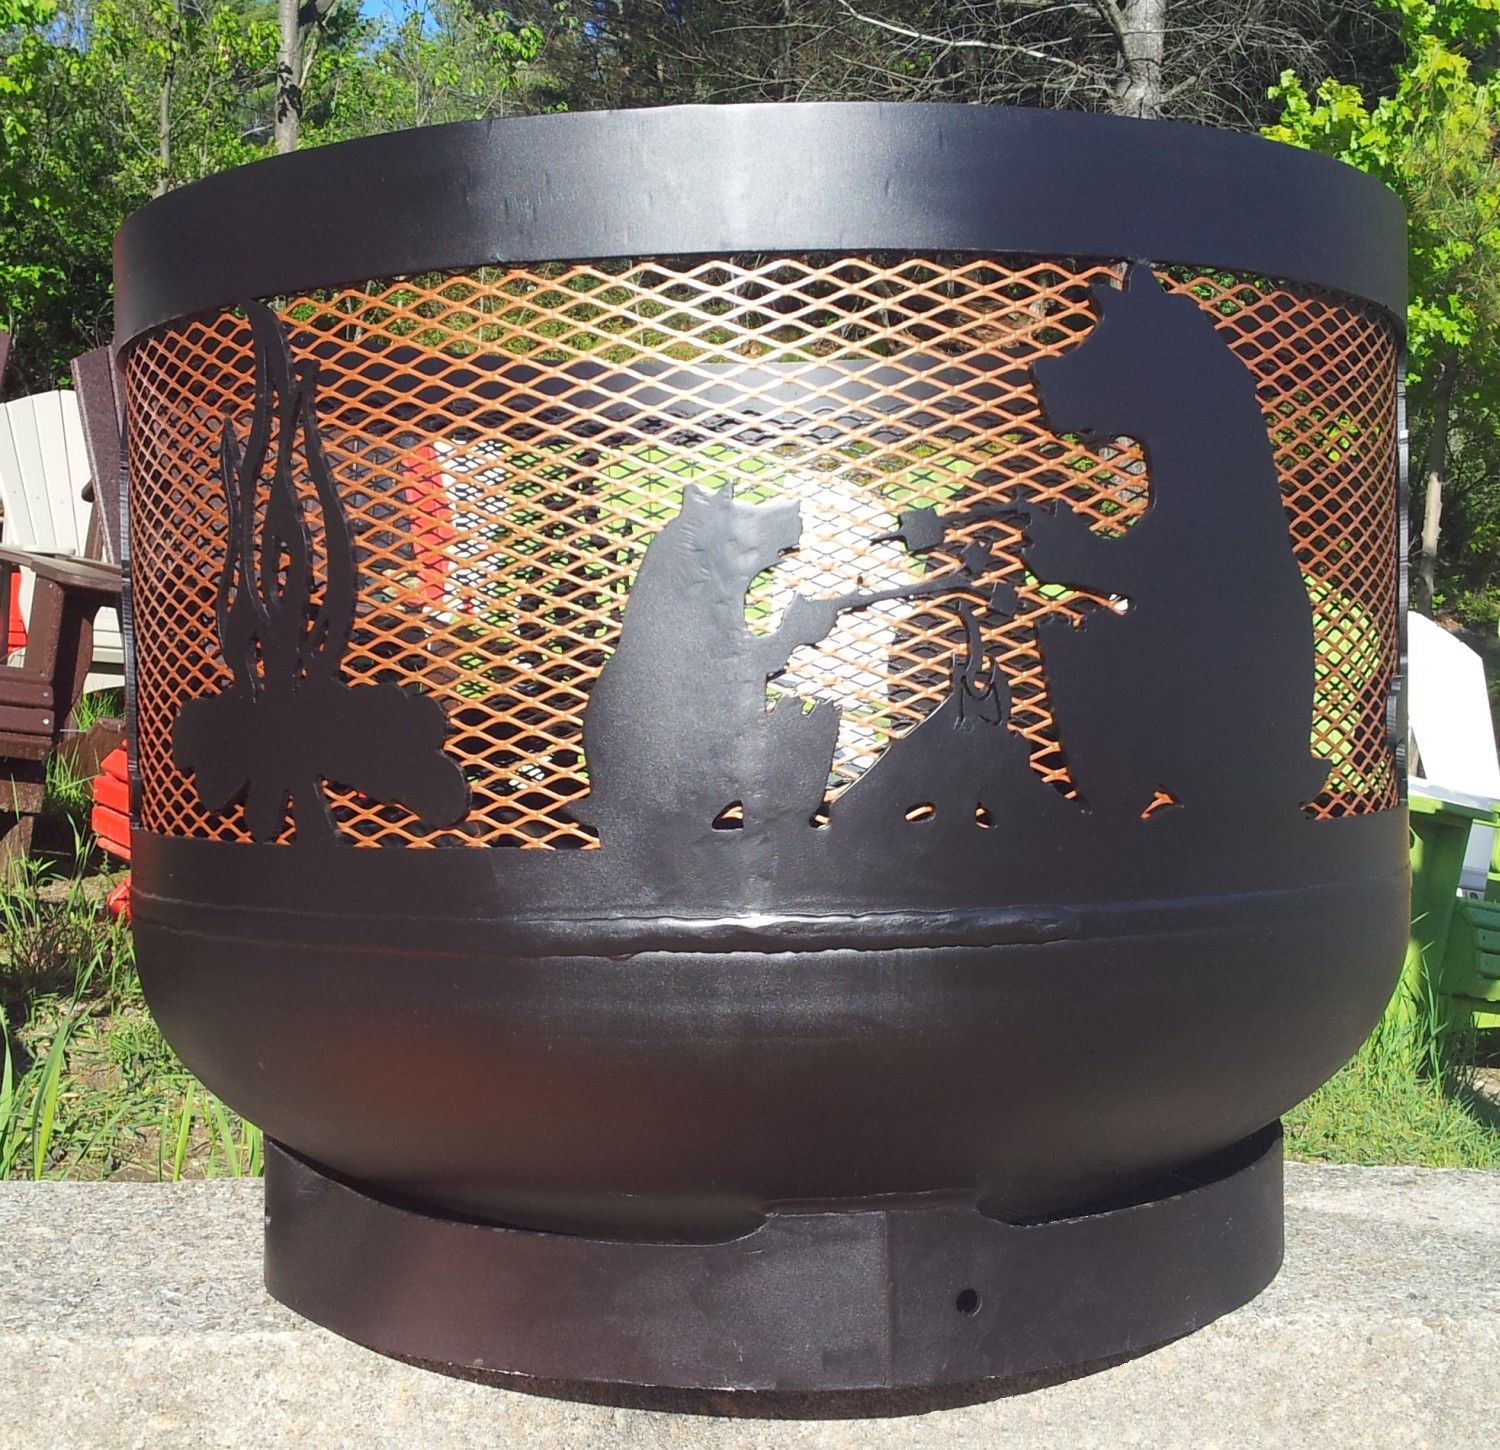 Muskoka Fireplace Inspirational Wood Burning Muskoka Fire Pit 30" Diameter Made Out Of